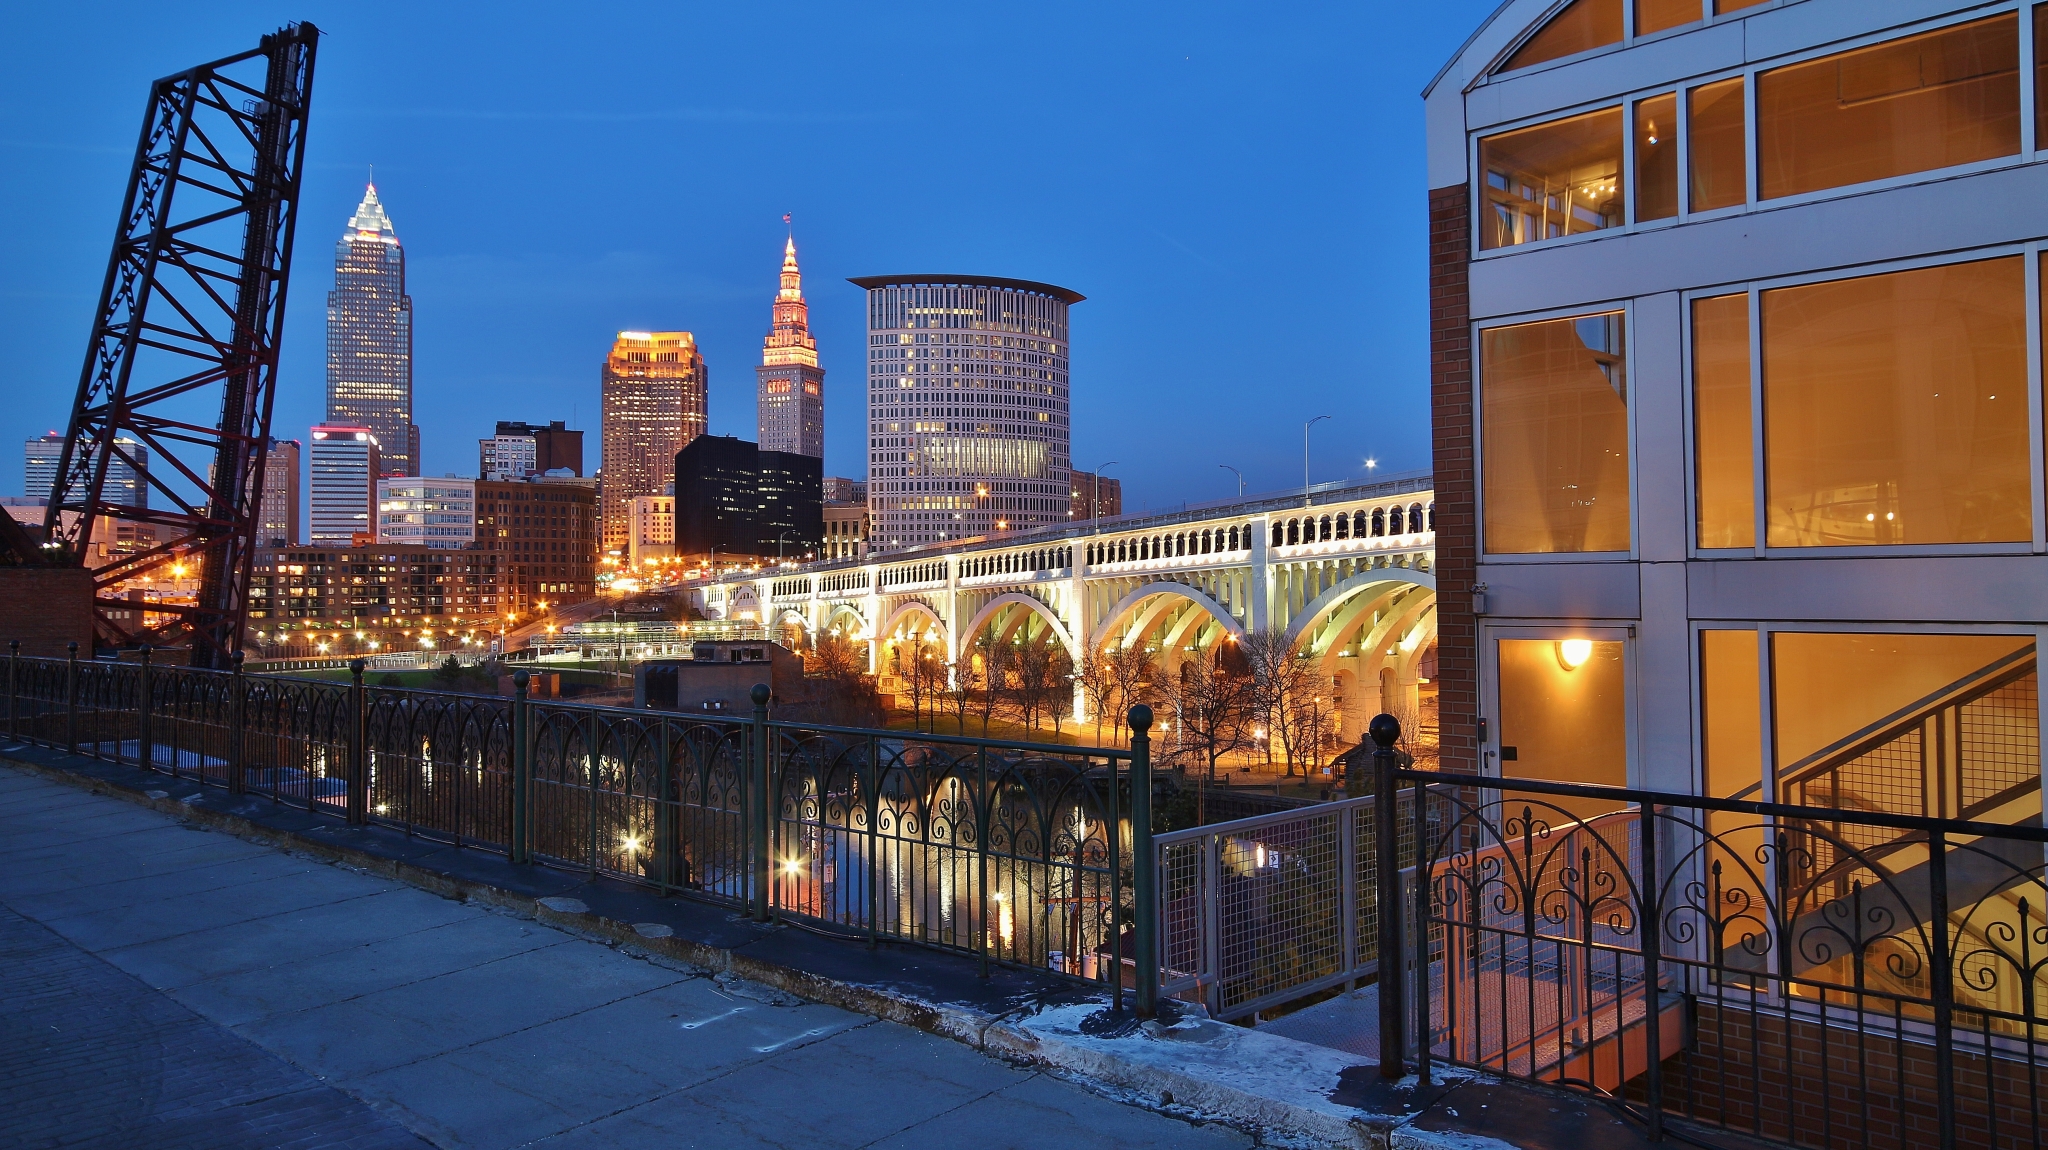 Studi: Cleveland Ohio Terdaftar Sebagai Kota Paling Stress di AS